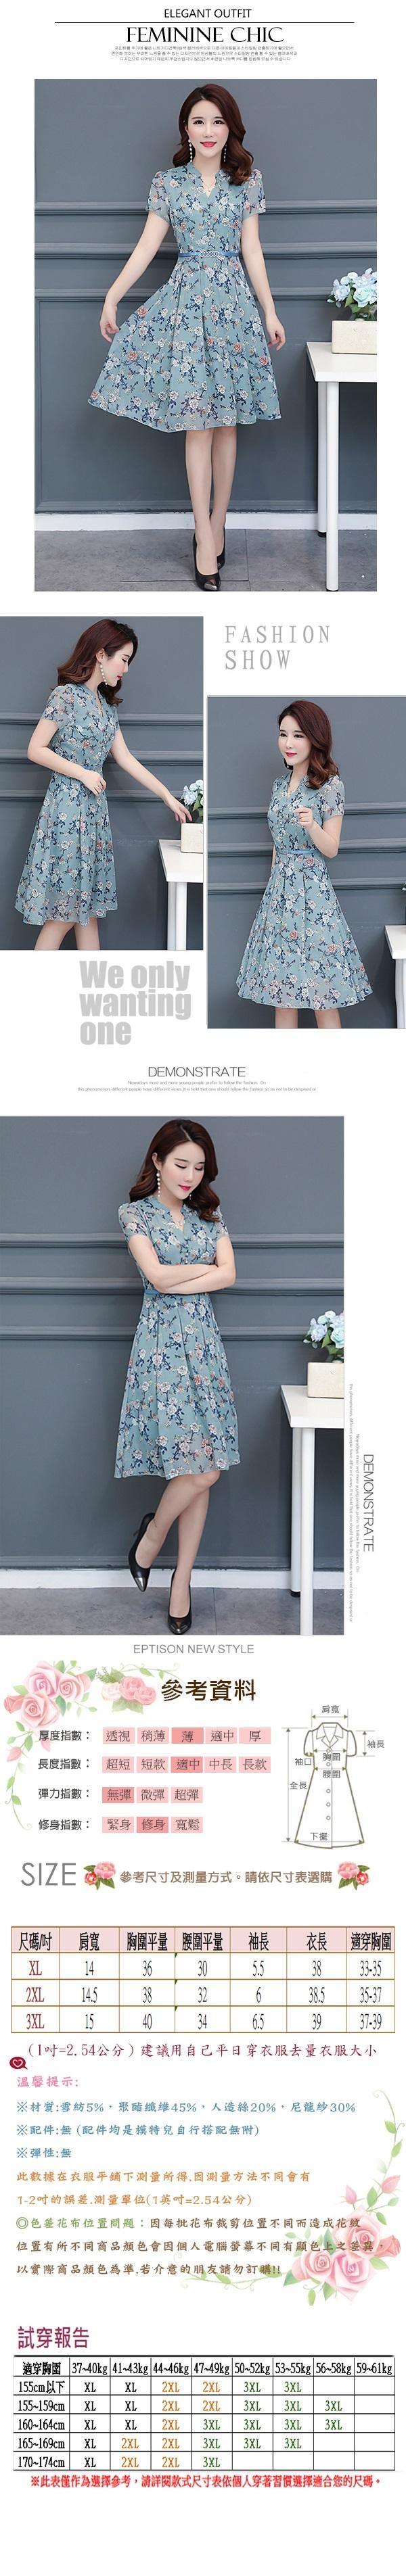 【韓國K.W.】特惠款時尚顯瘦名媛洋裝